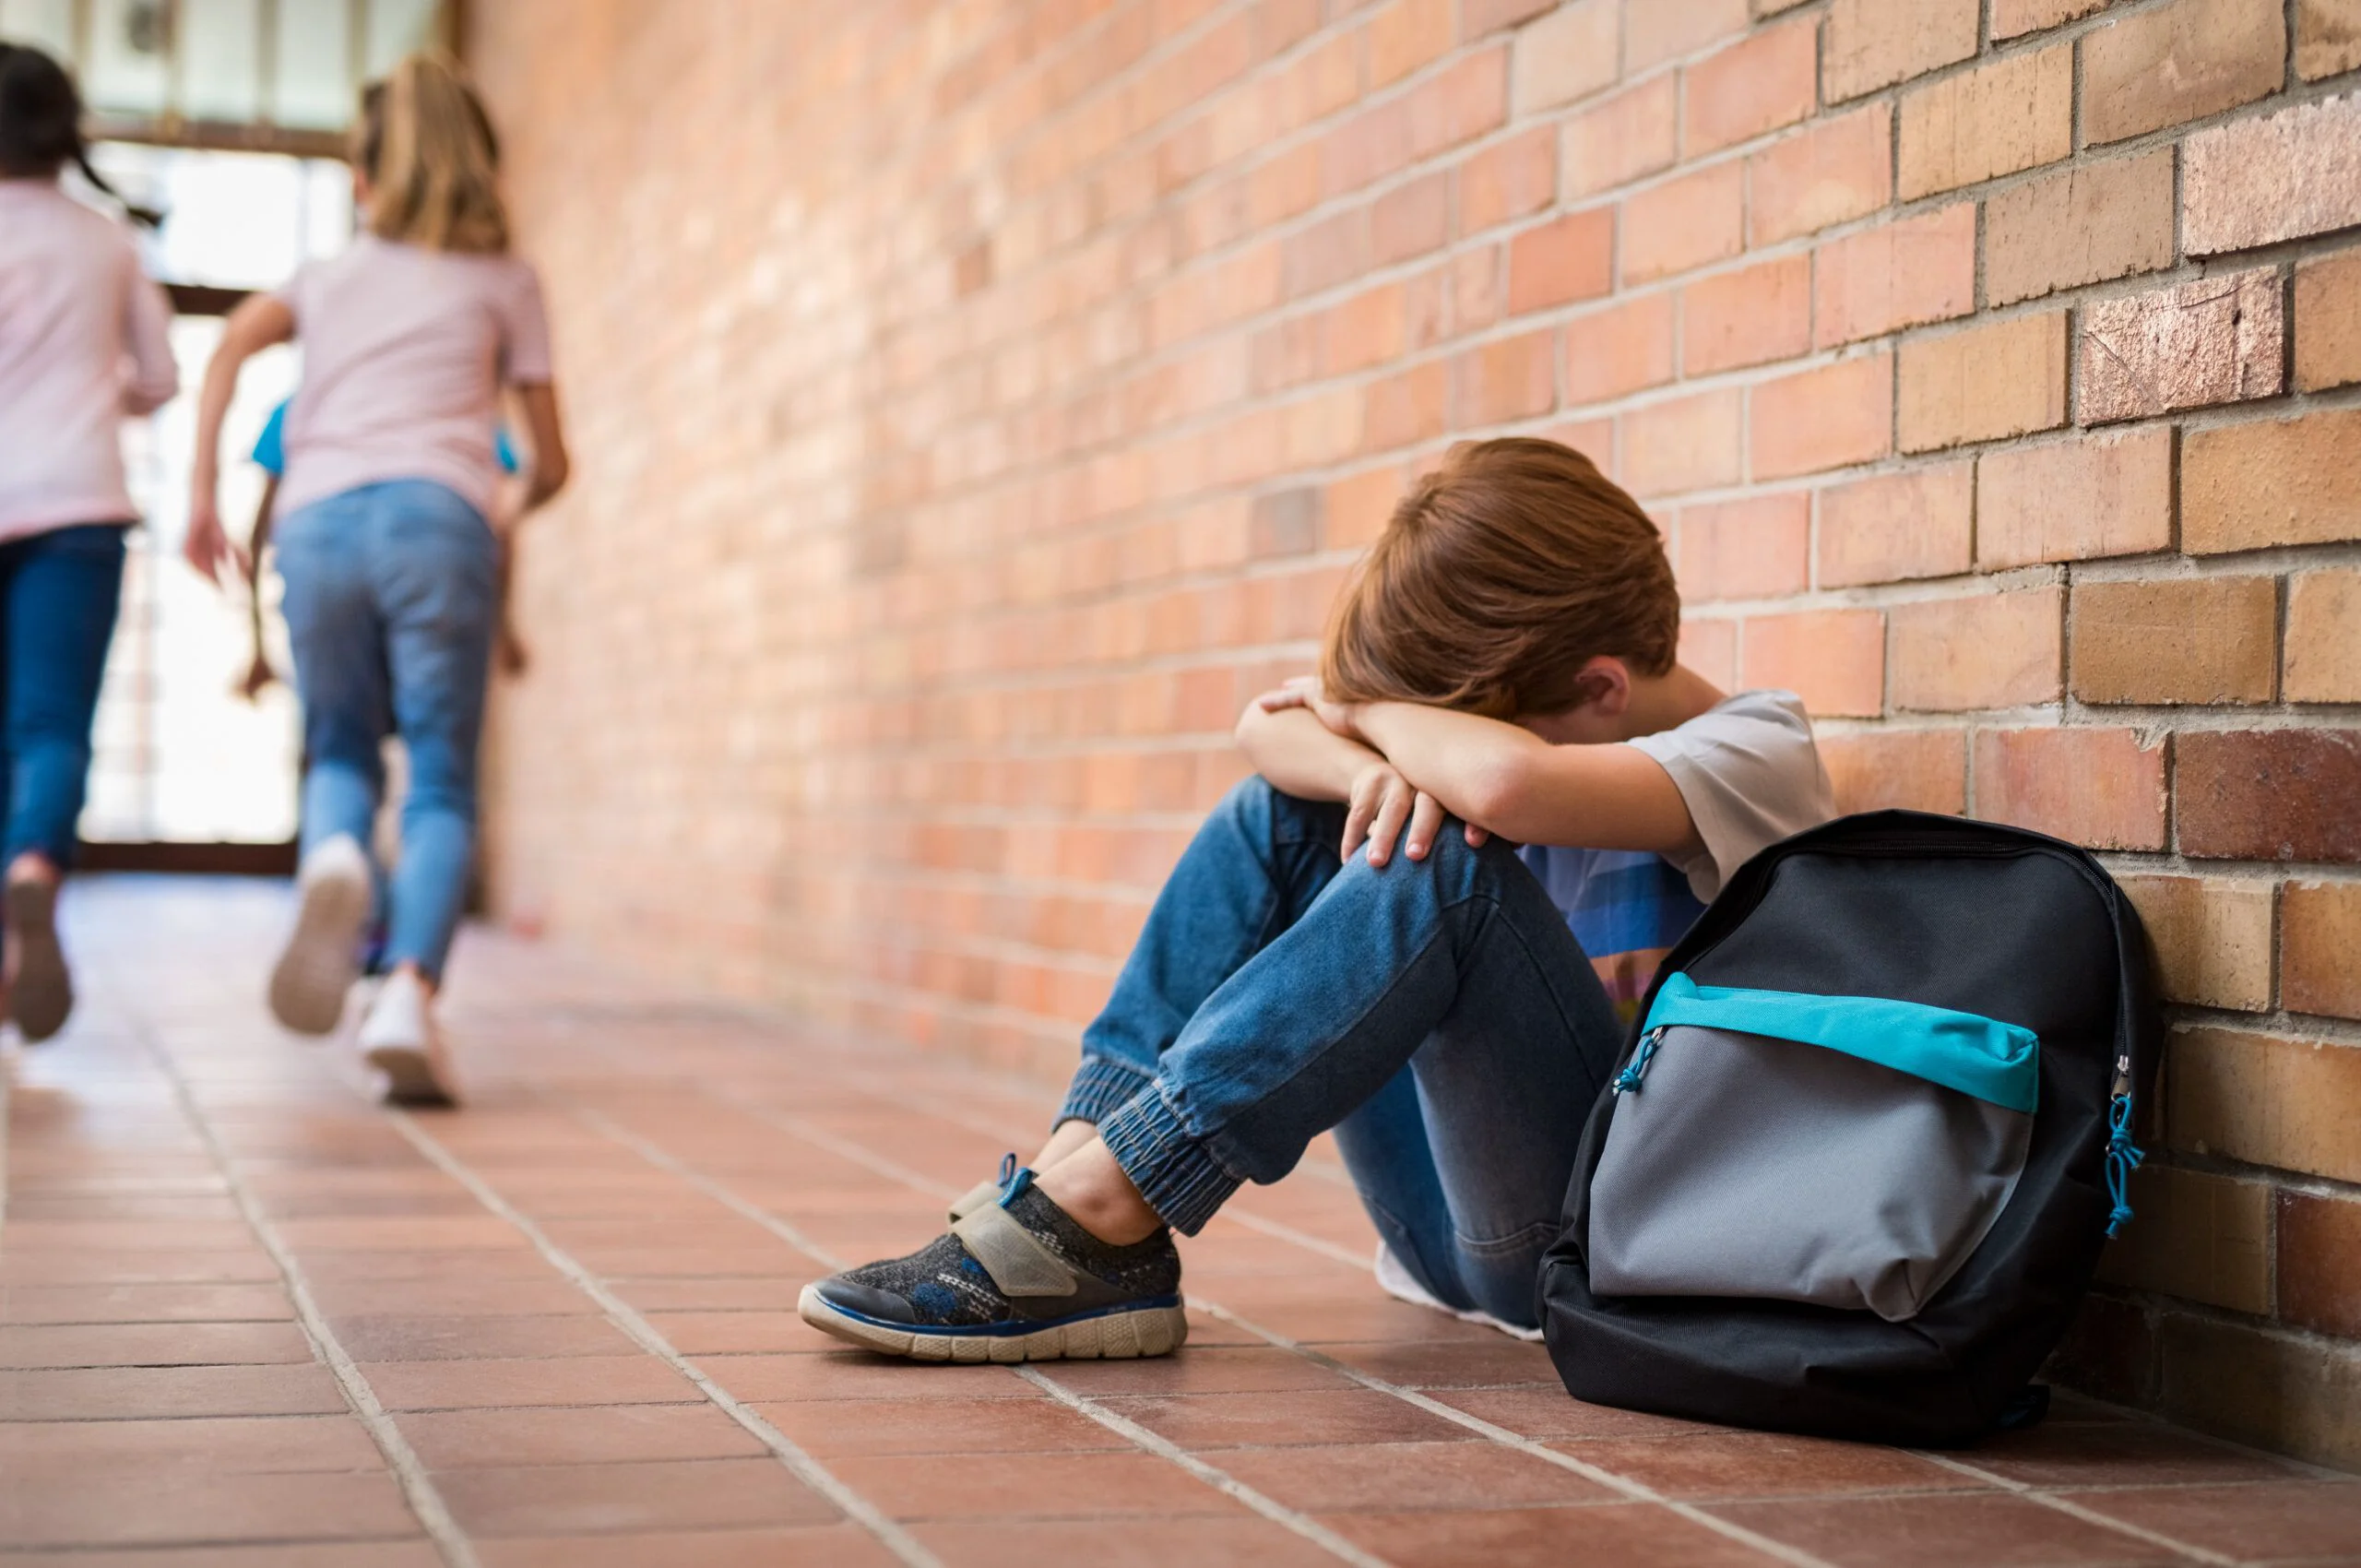 Măsuri drastice împotriva bullying-ului 